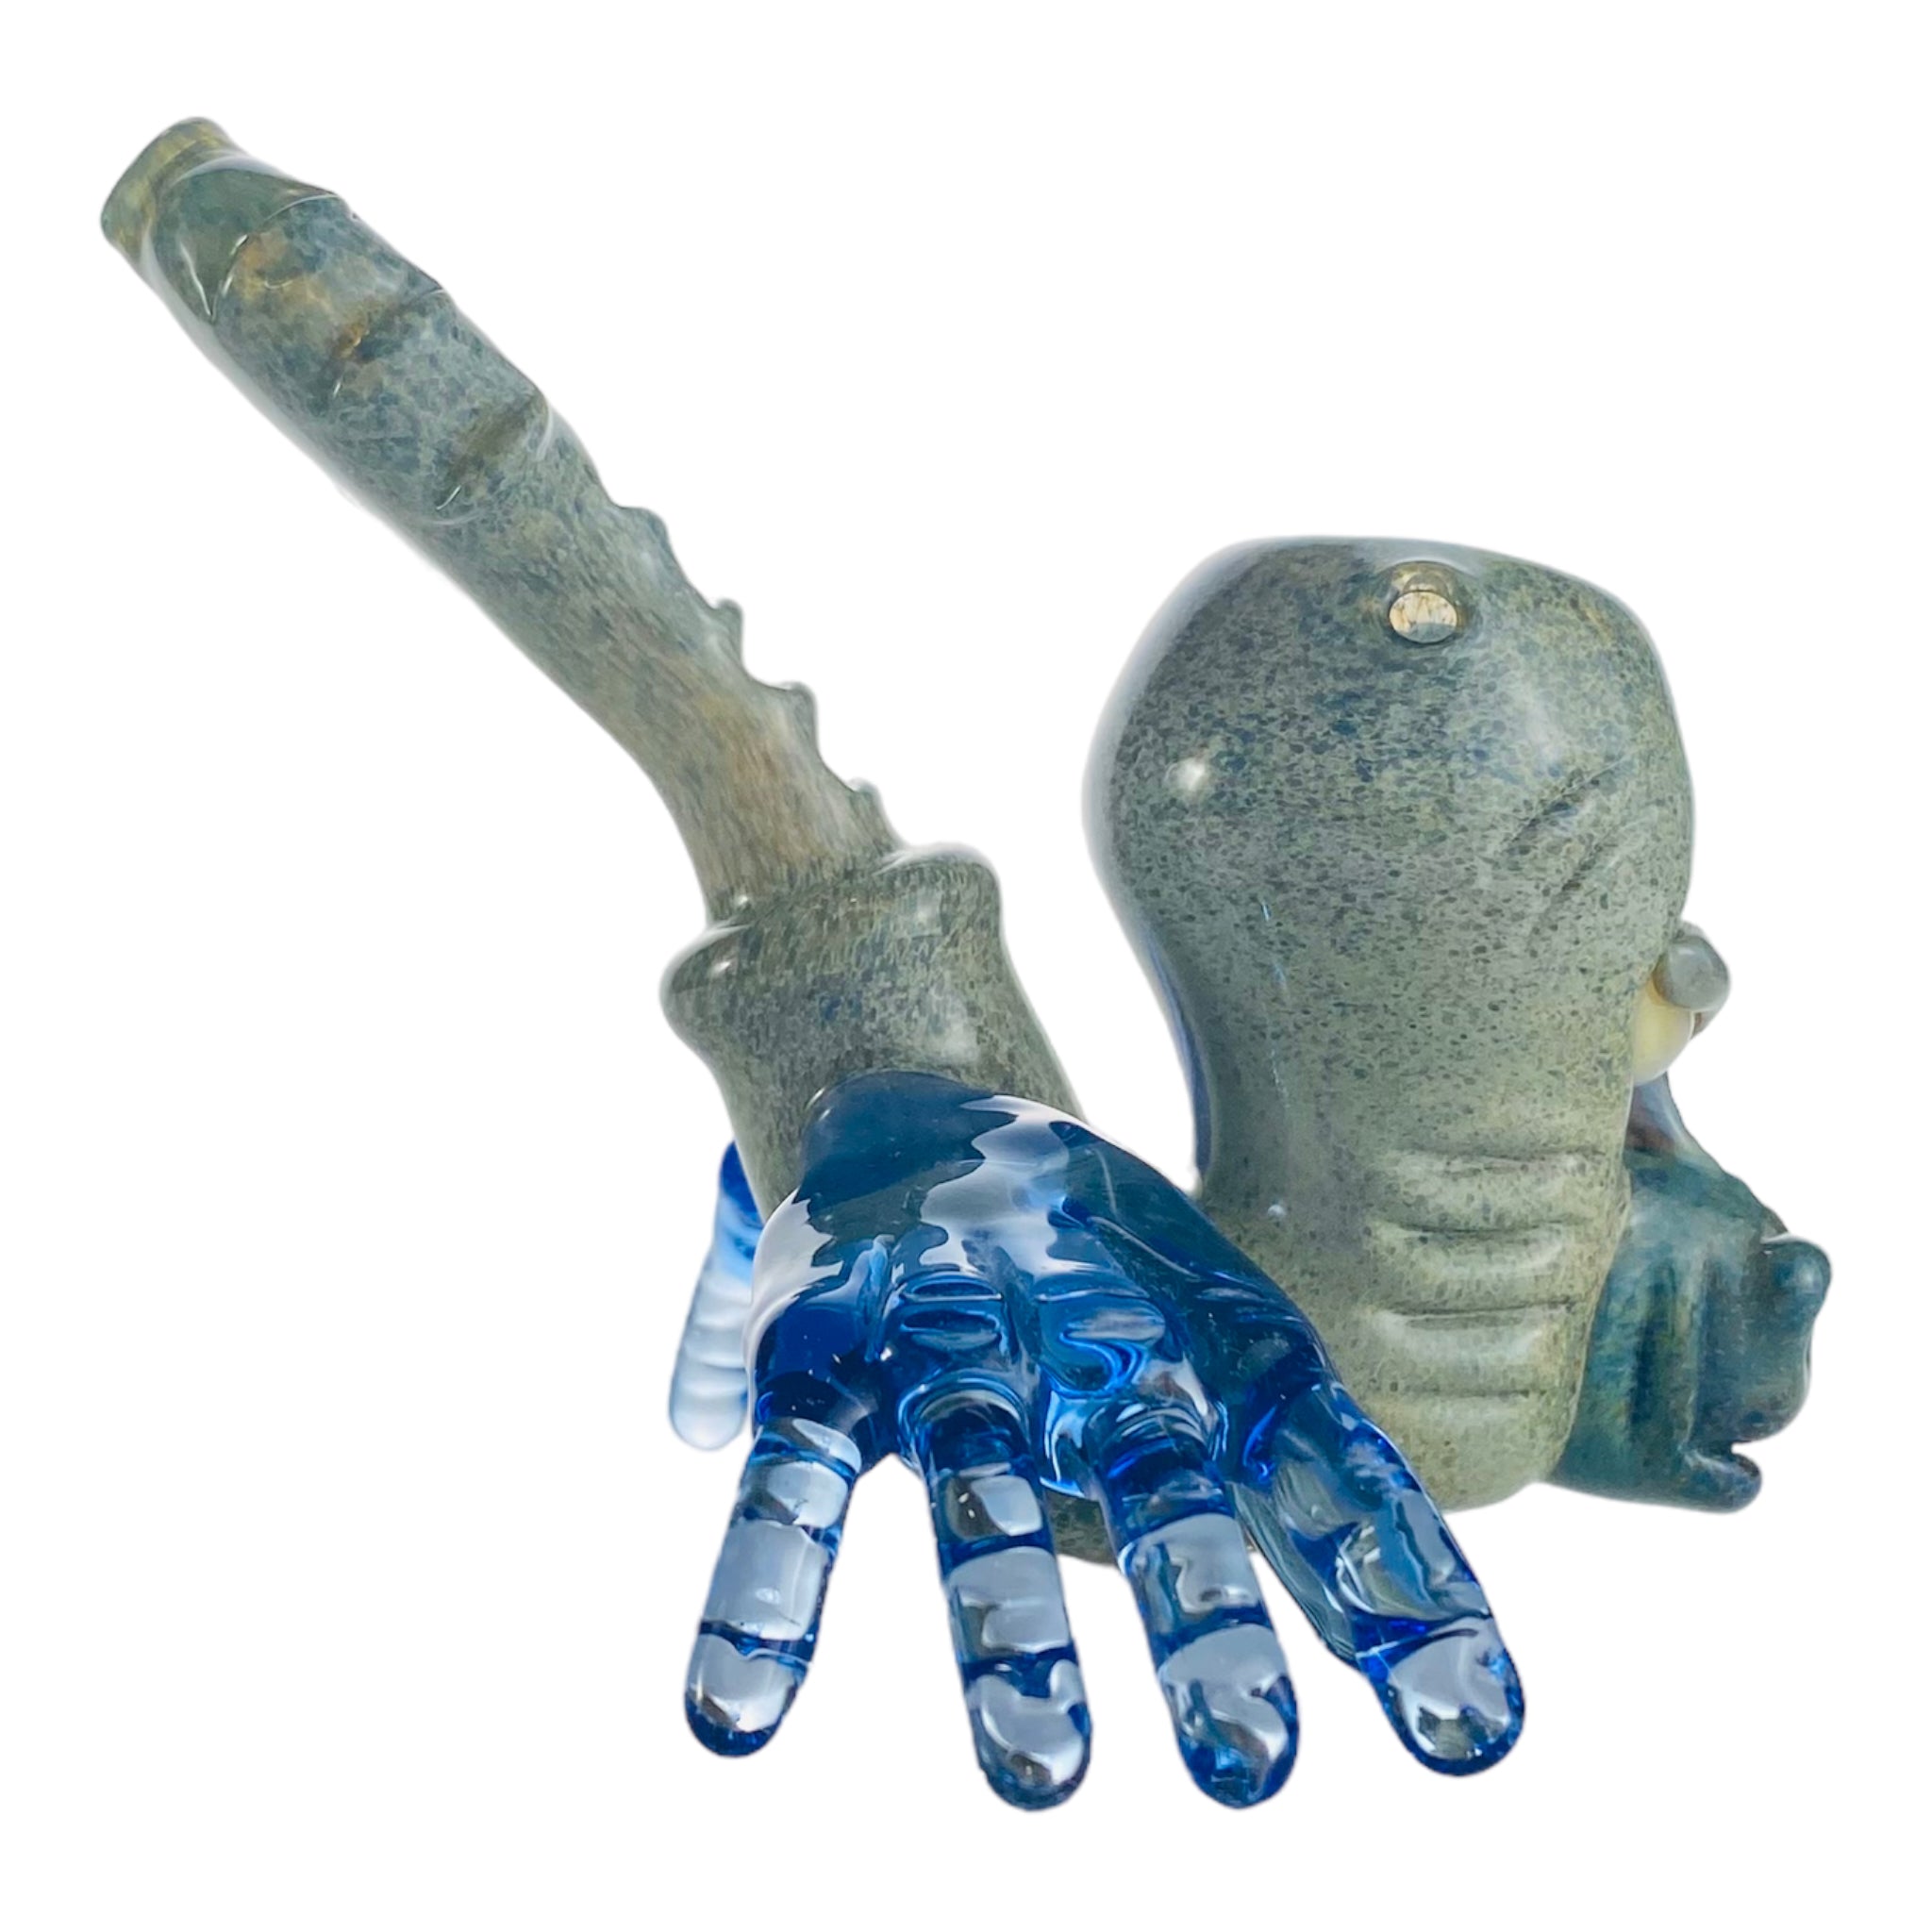 Ben O'Neil Glass - Sculpted Face Glass Sherlock With Blue Hands